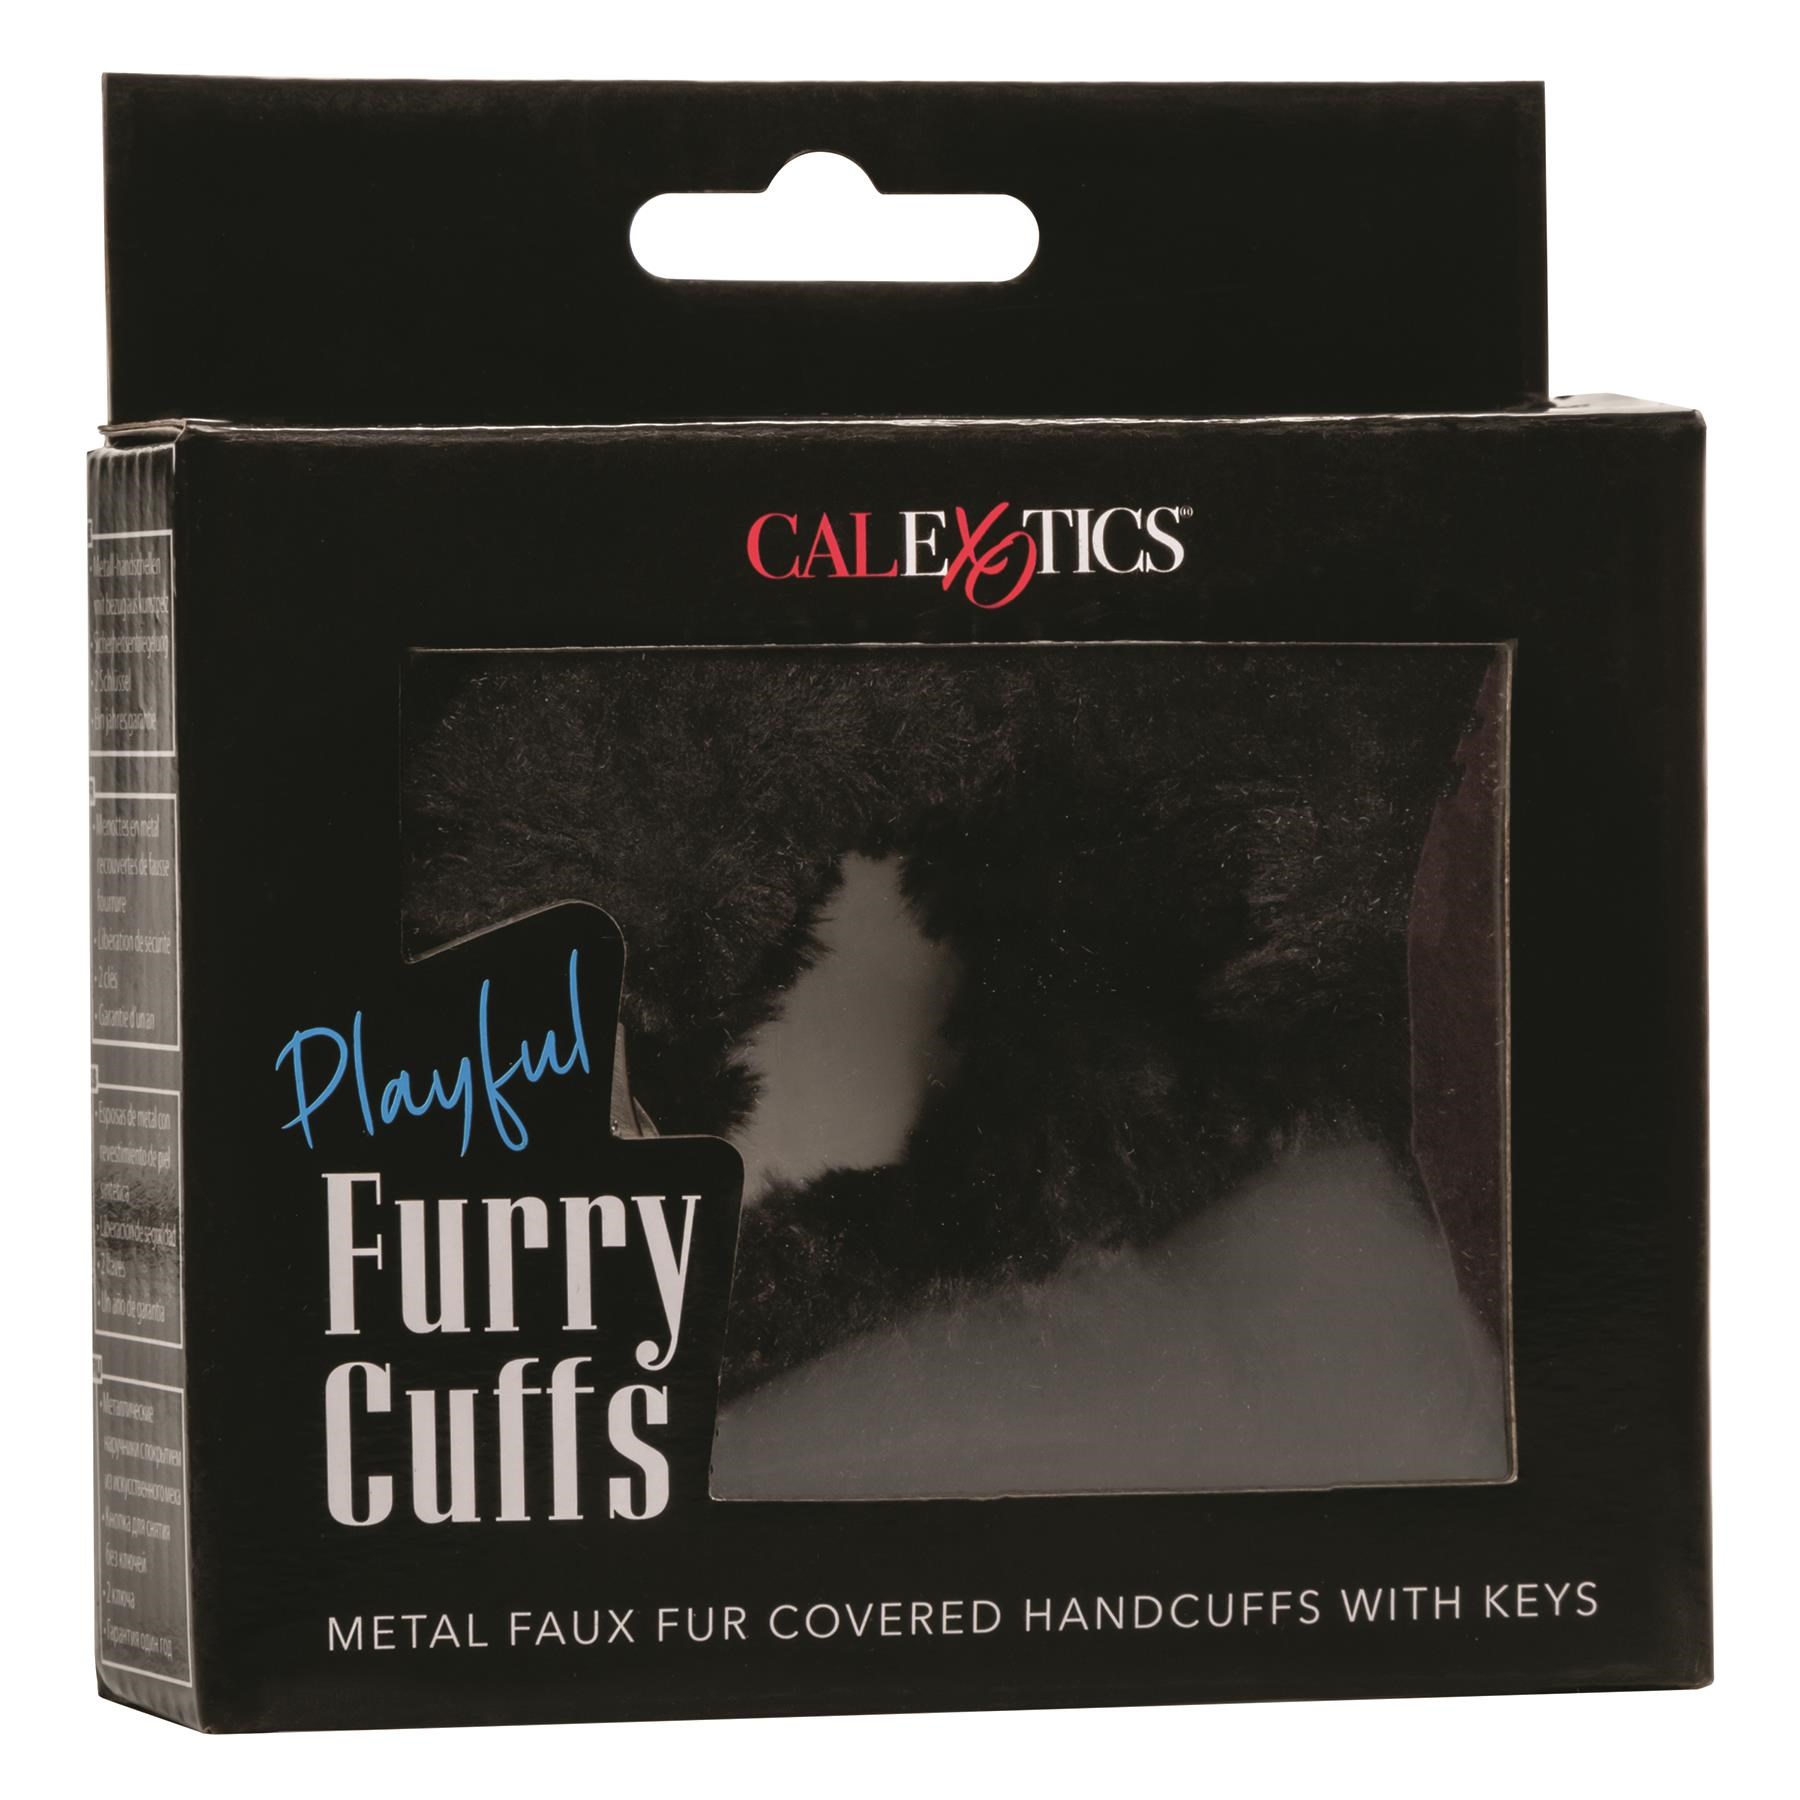 Playful Furry Cuffs Packaging Shot - Black